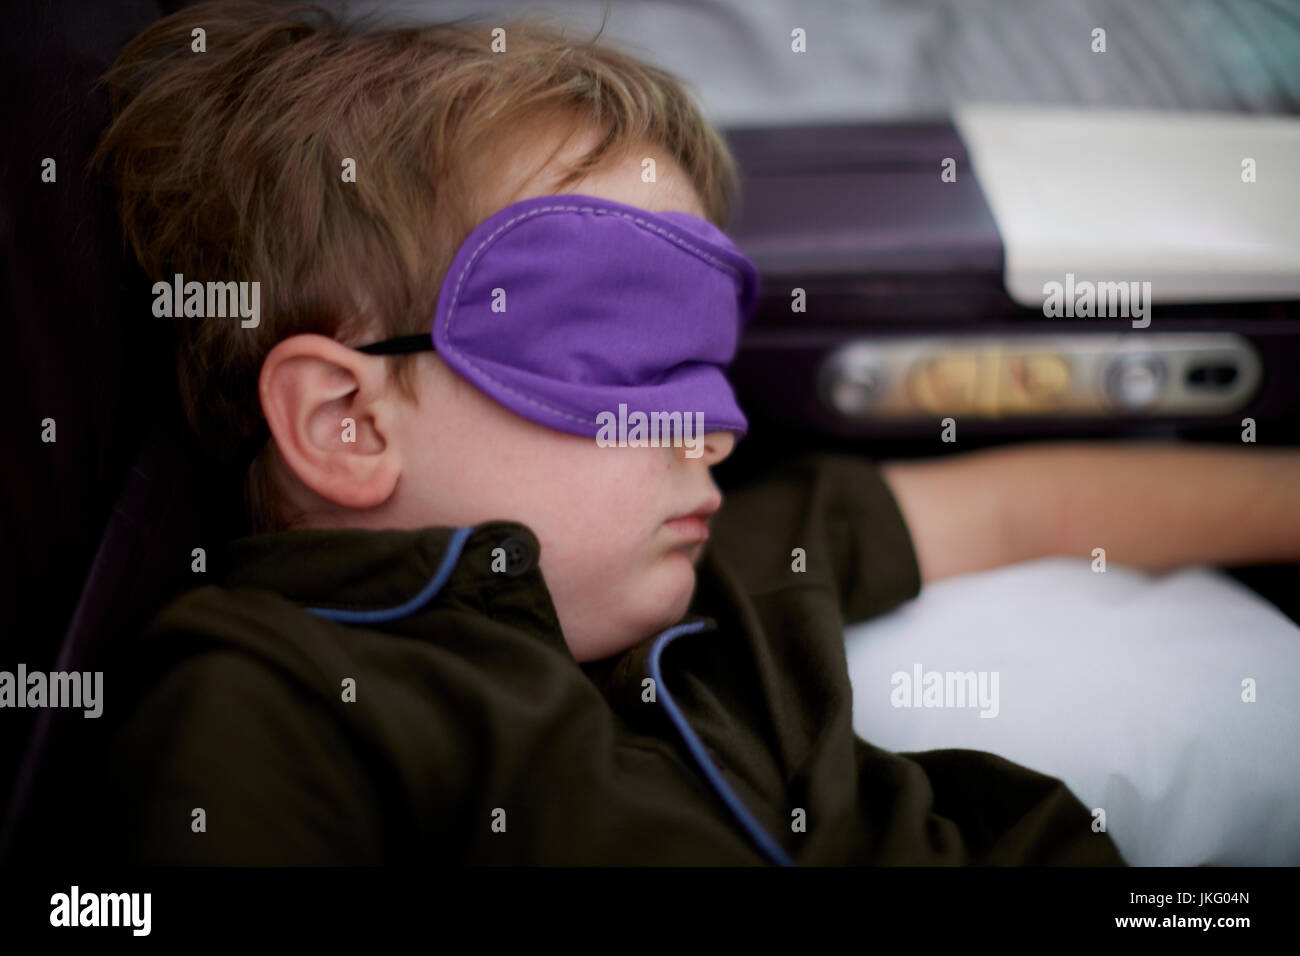 New York City, United States, l'aéroport JFK, un petit garçon enfant dormir sur un vol long courrier en utilisant le masque pour couvrir ses yeux Banque D'Images